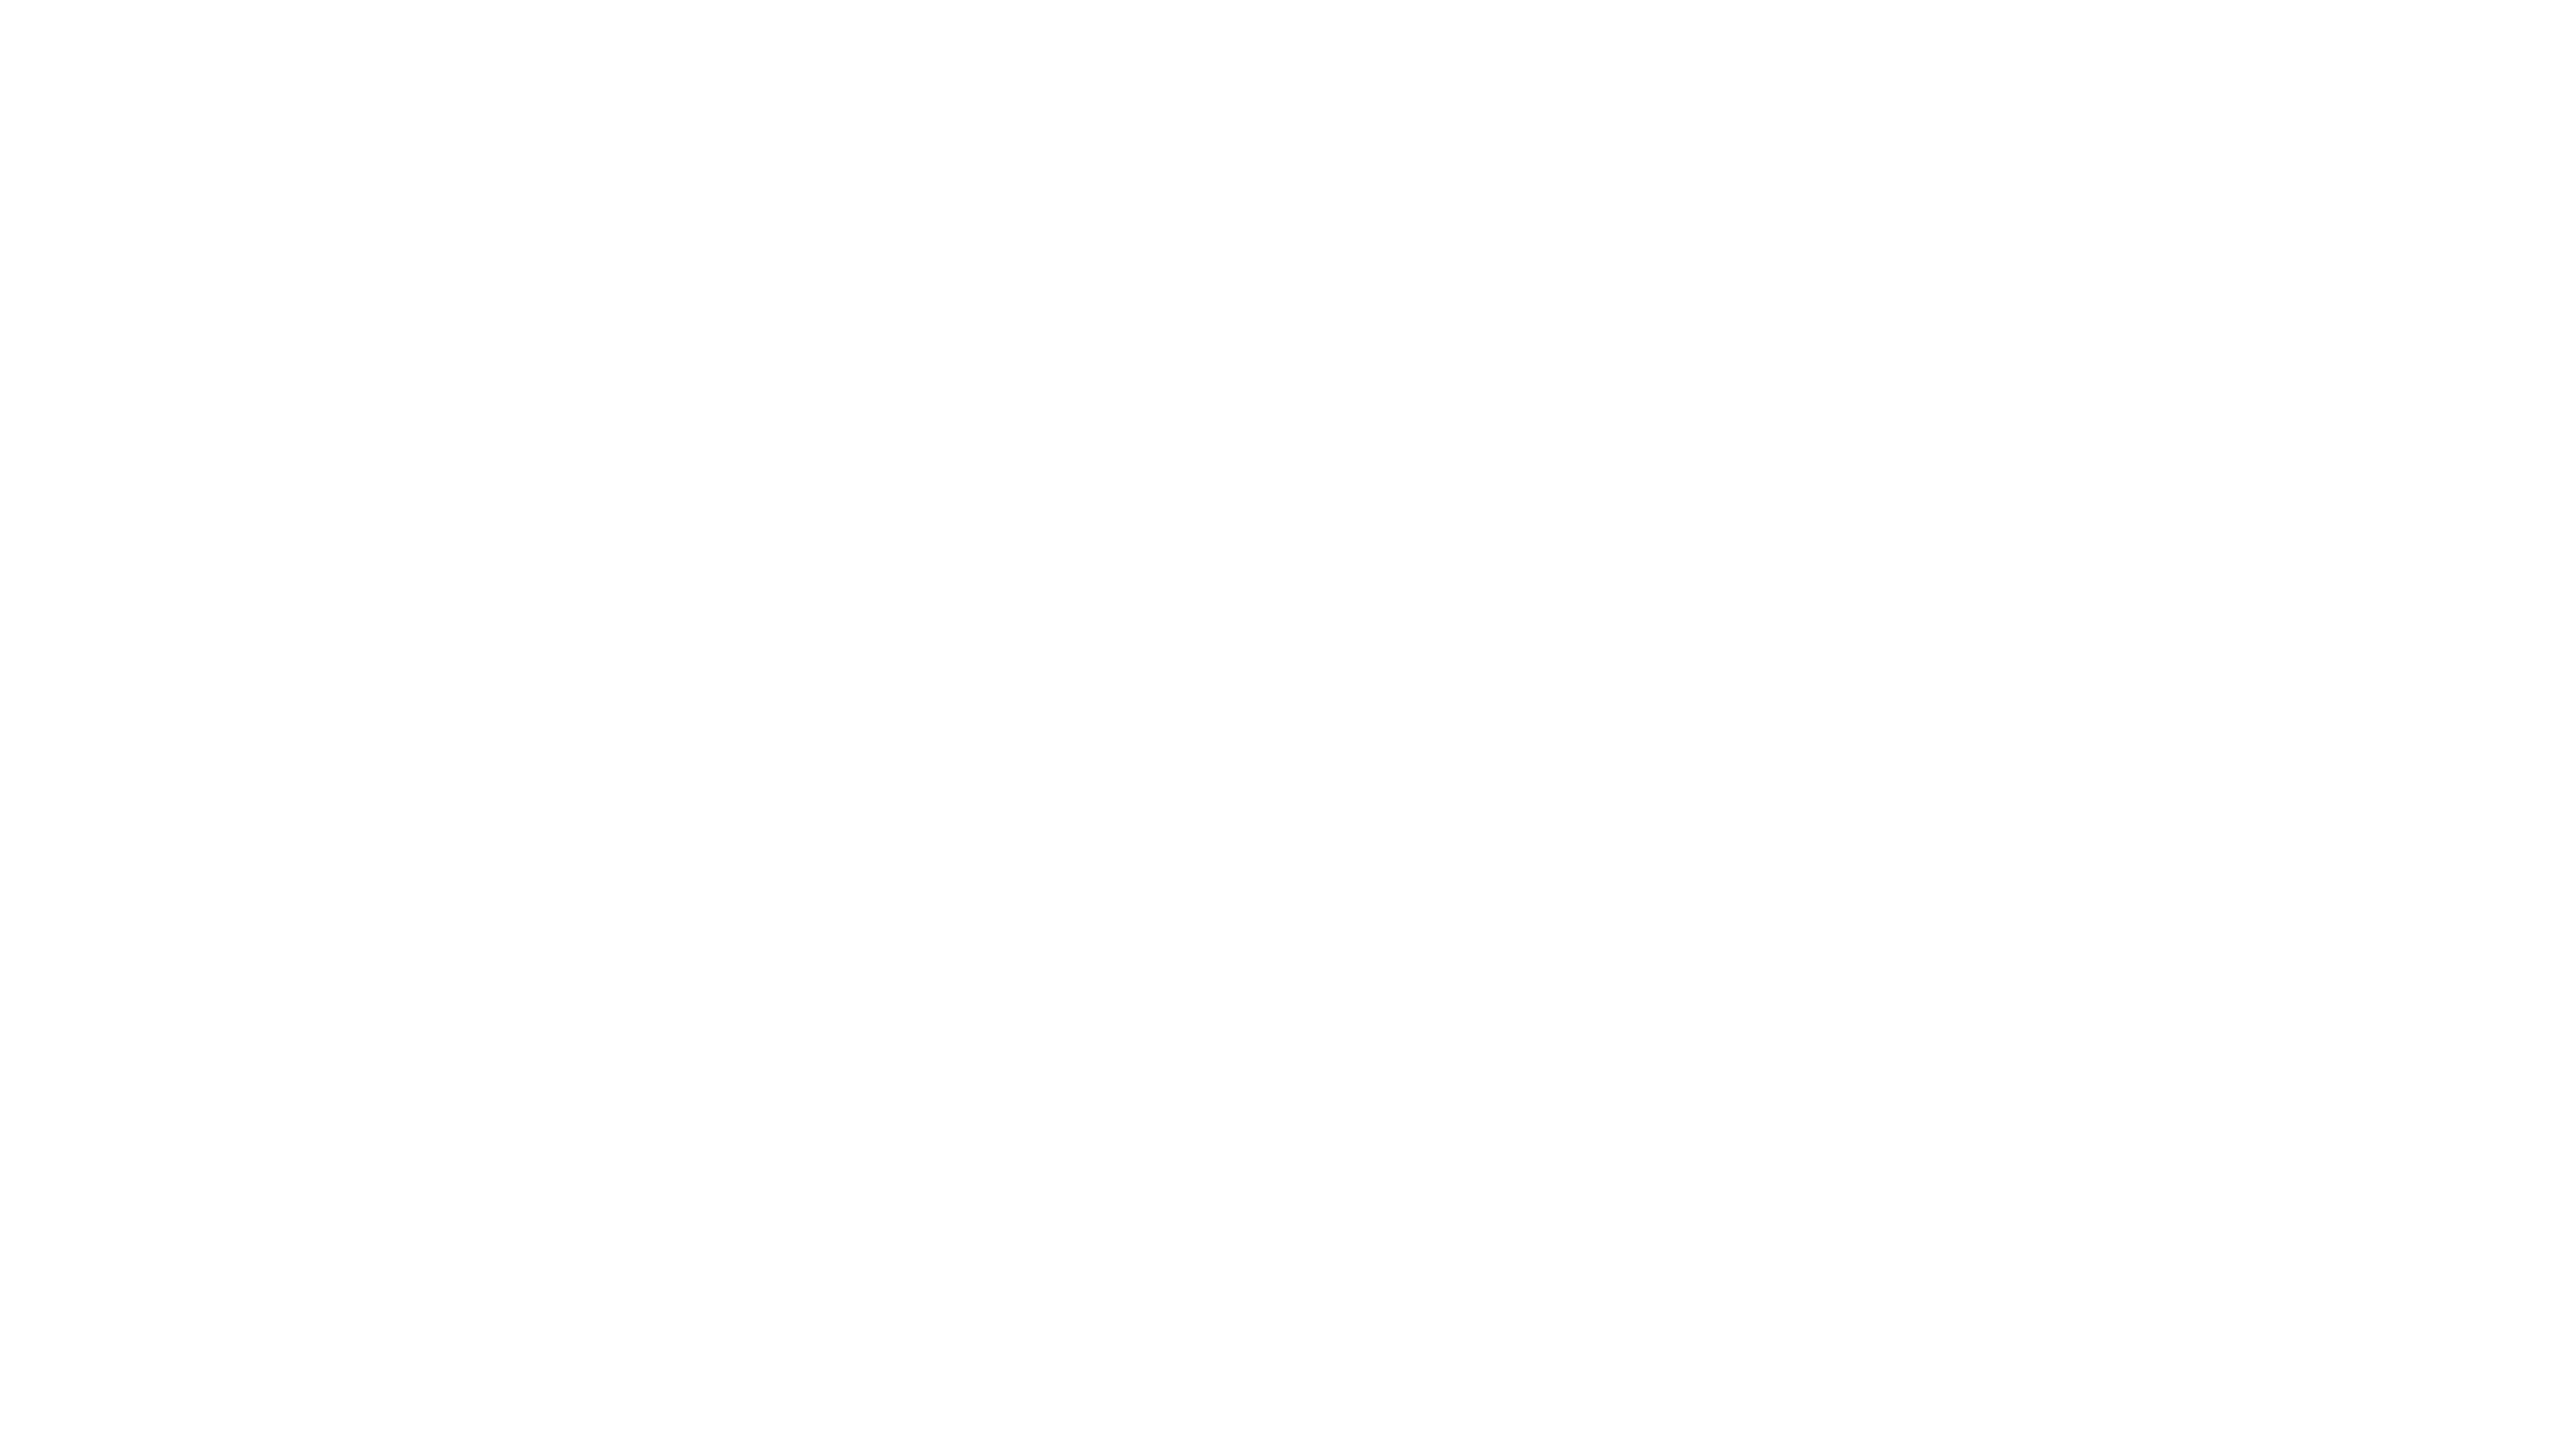 Renovate-FINAL_-Renovate-No-Tagline-white